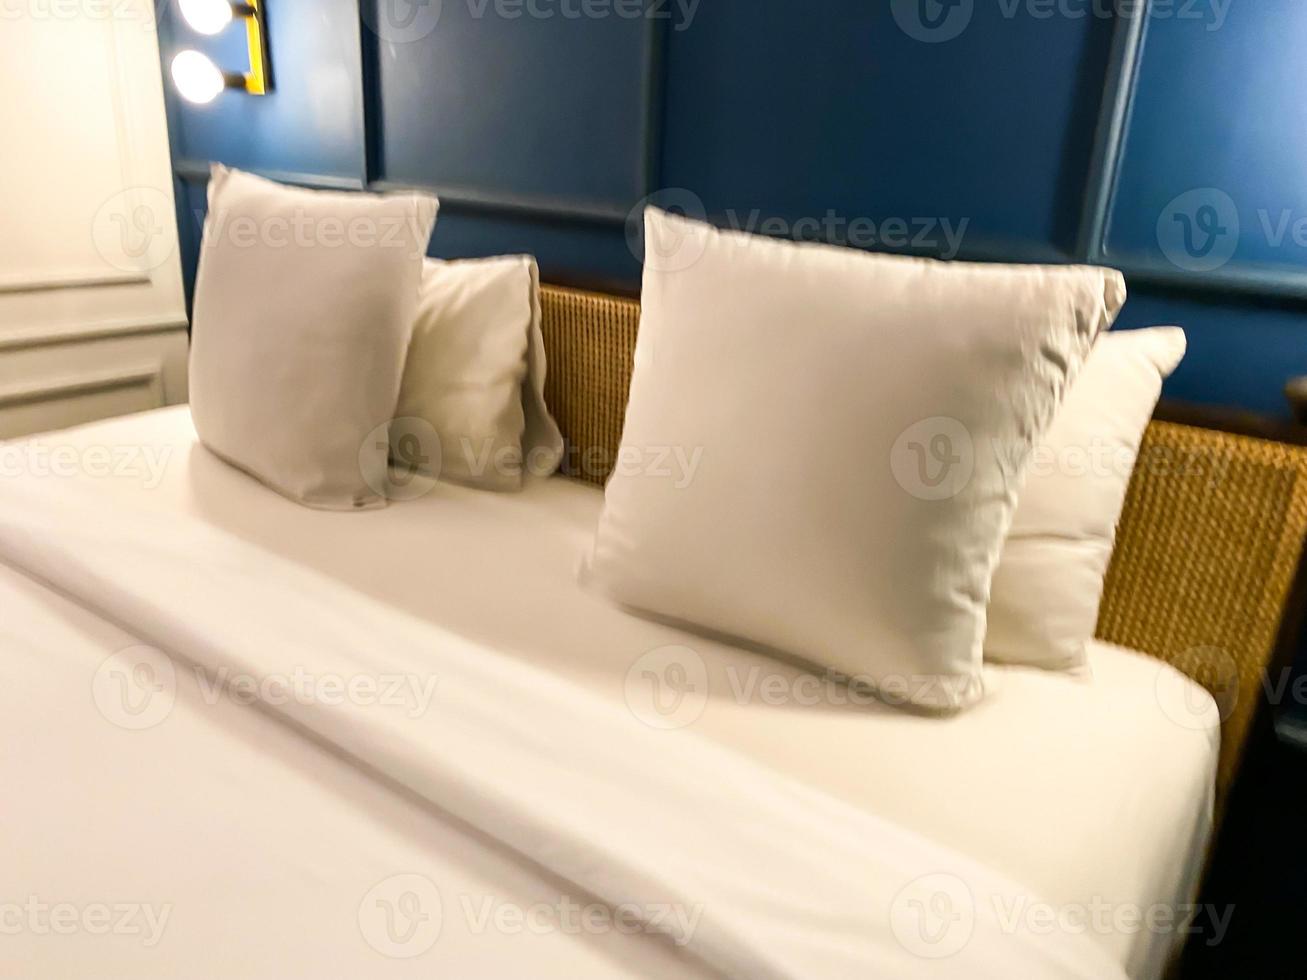 vicino su Visualizza di blu e bianca maestro Camera da letto. pulire, semplice e moderno Camera da letto interno design foto